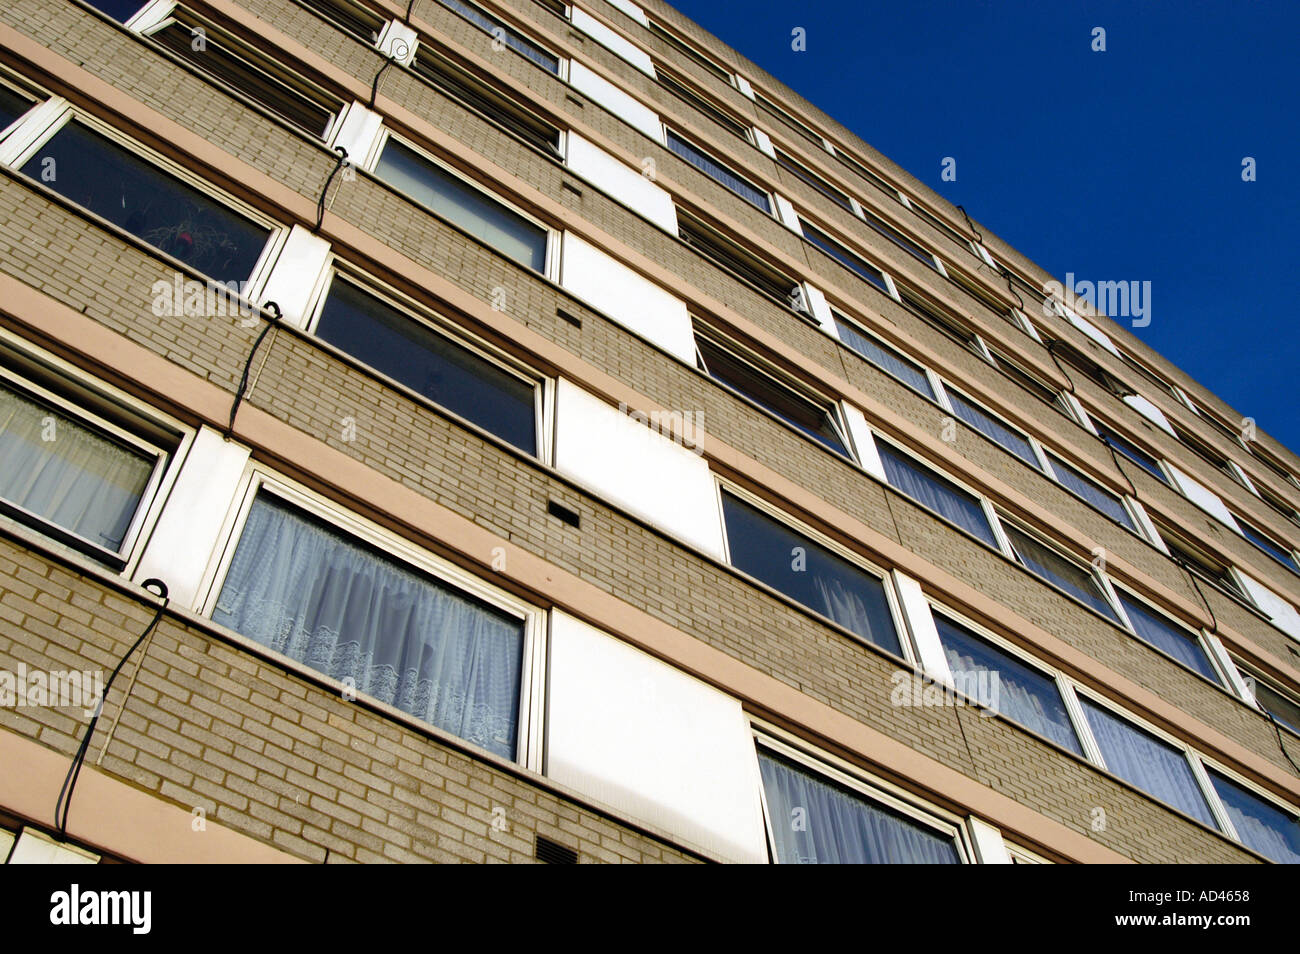 Council flats, London, England UK Stock Photo